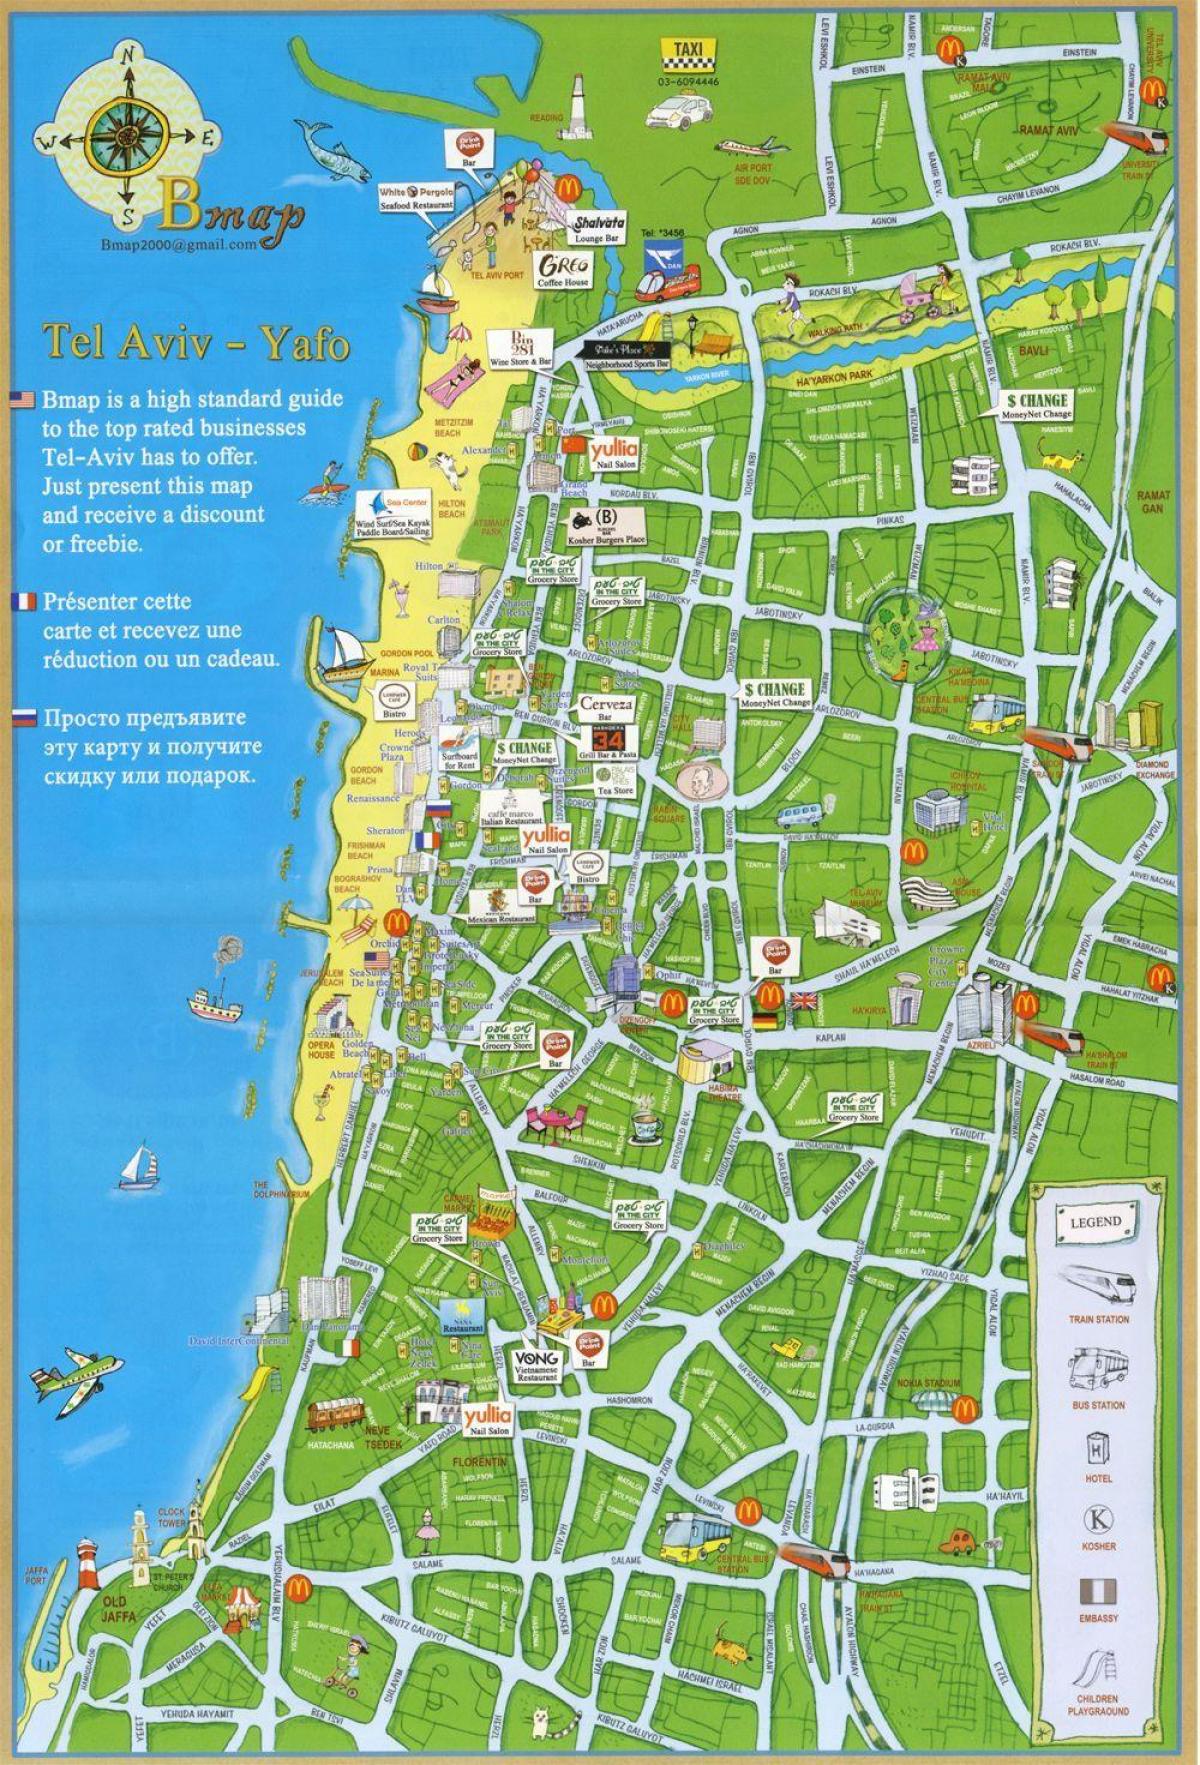 Tel-Aviv attractions de la carte